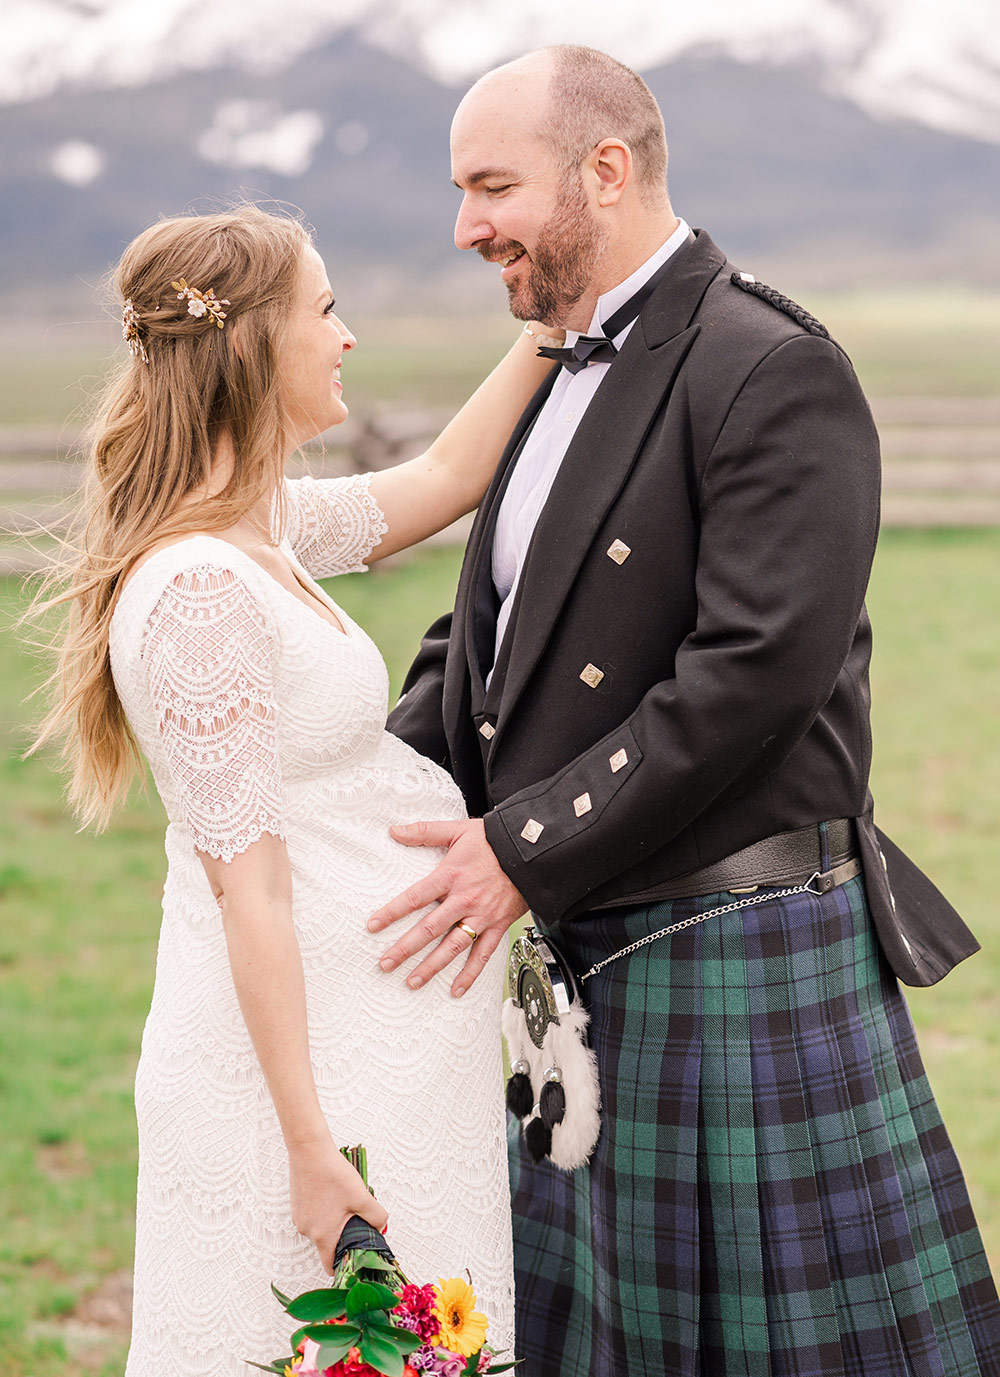 Ett skotskt bröllop i USA